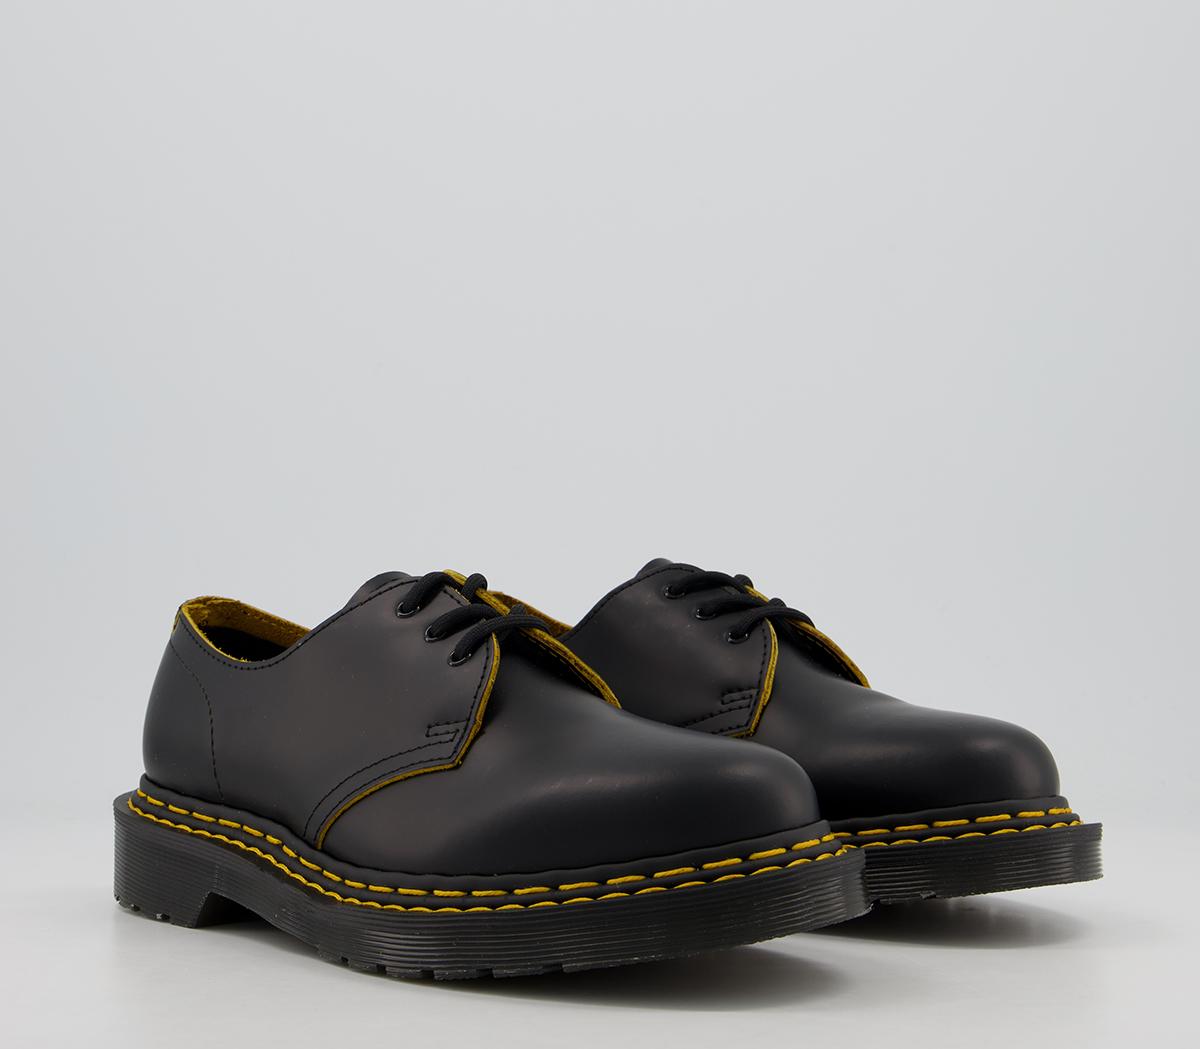 Dr. Martens 1461 Bex Ds Shoes Black - Flats